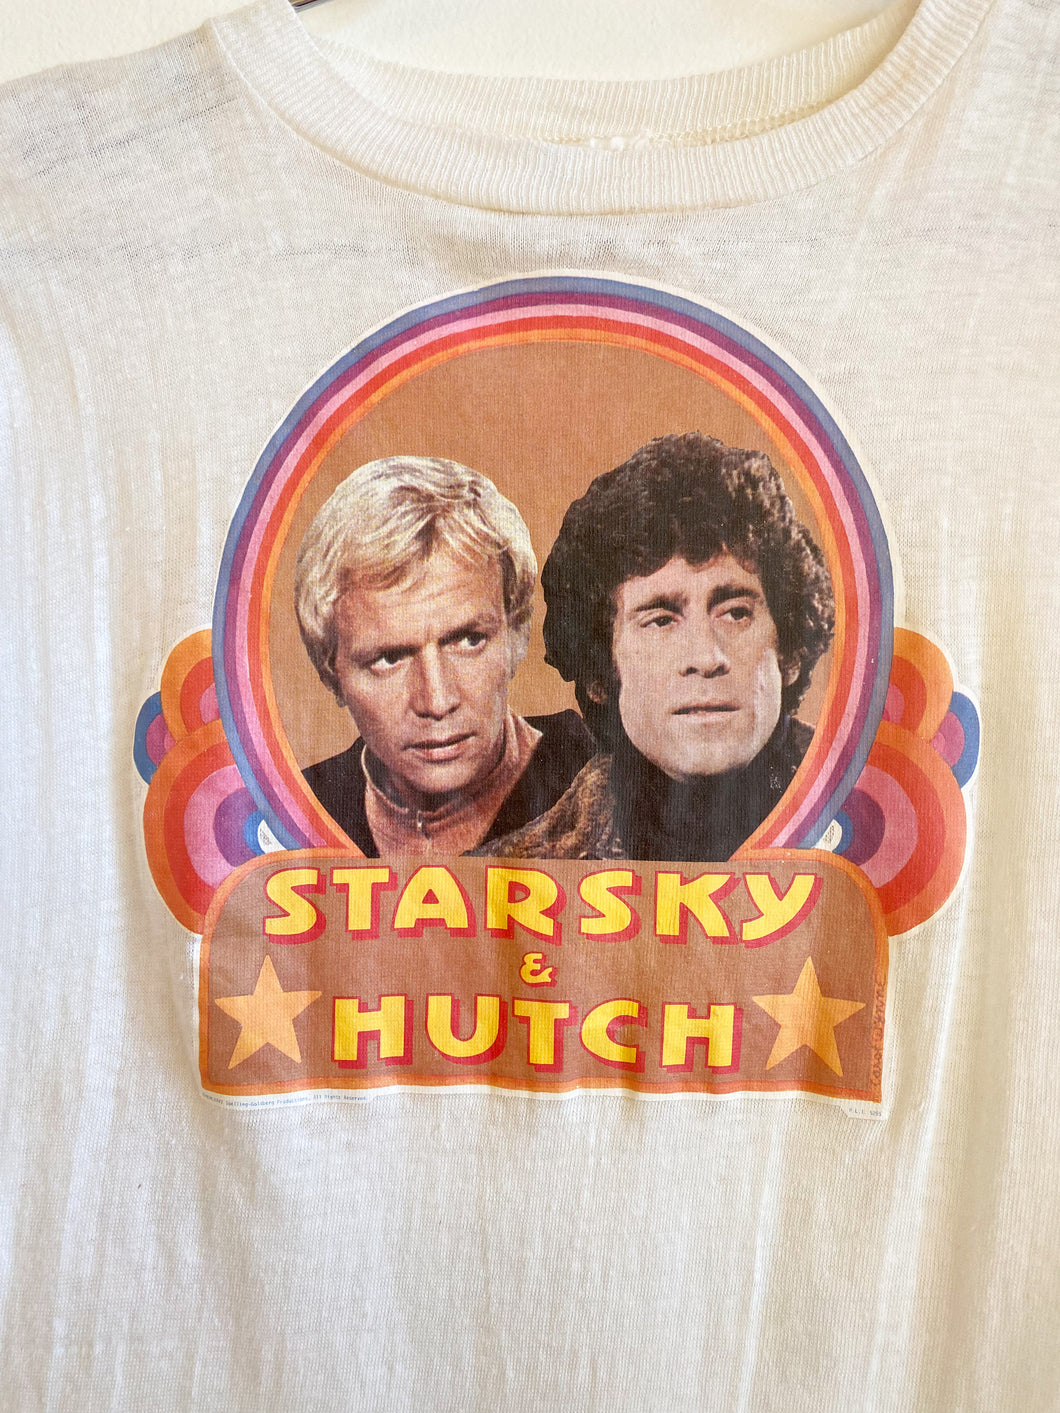 Starsky & Hitch t-shirt